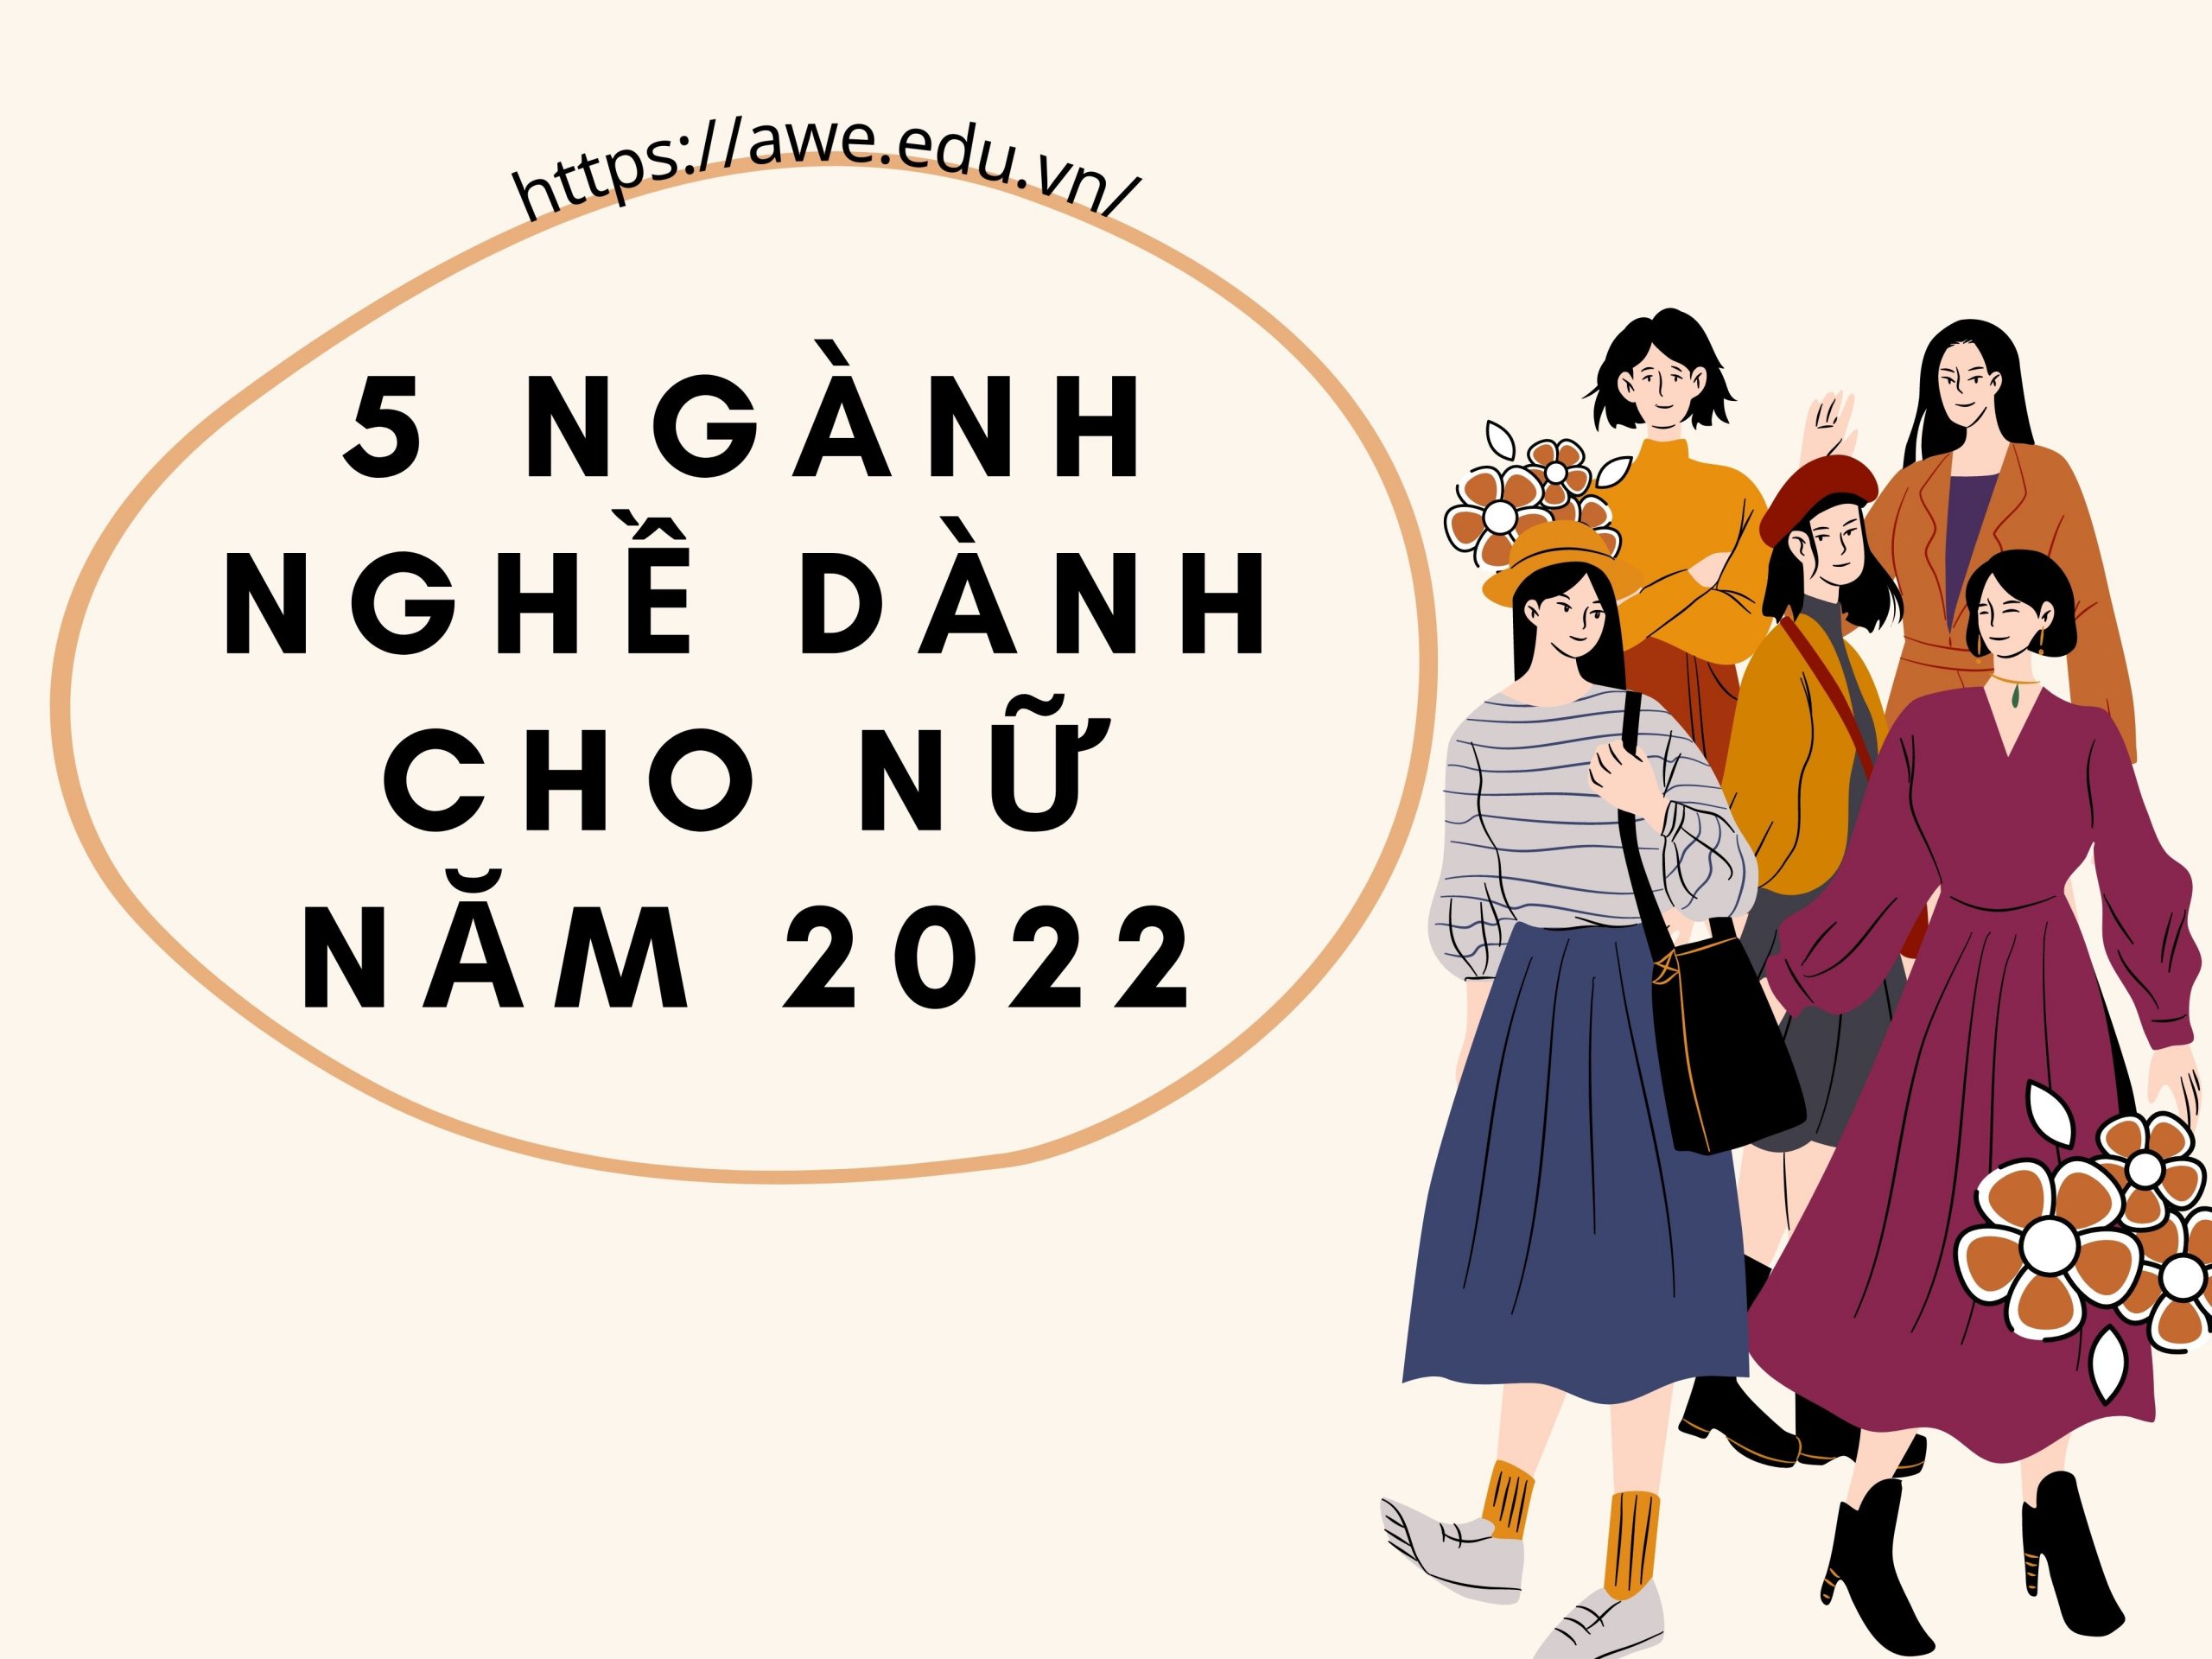 5 NGÀNH NGHỀ DÀNH CHO NỮ NĂM 2022!!!